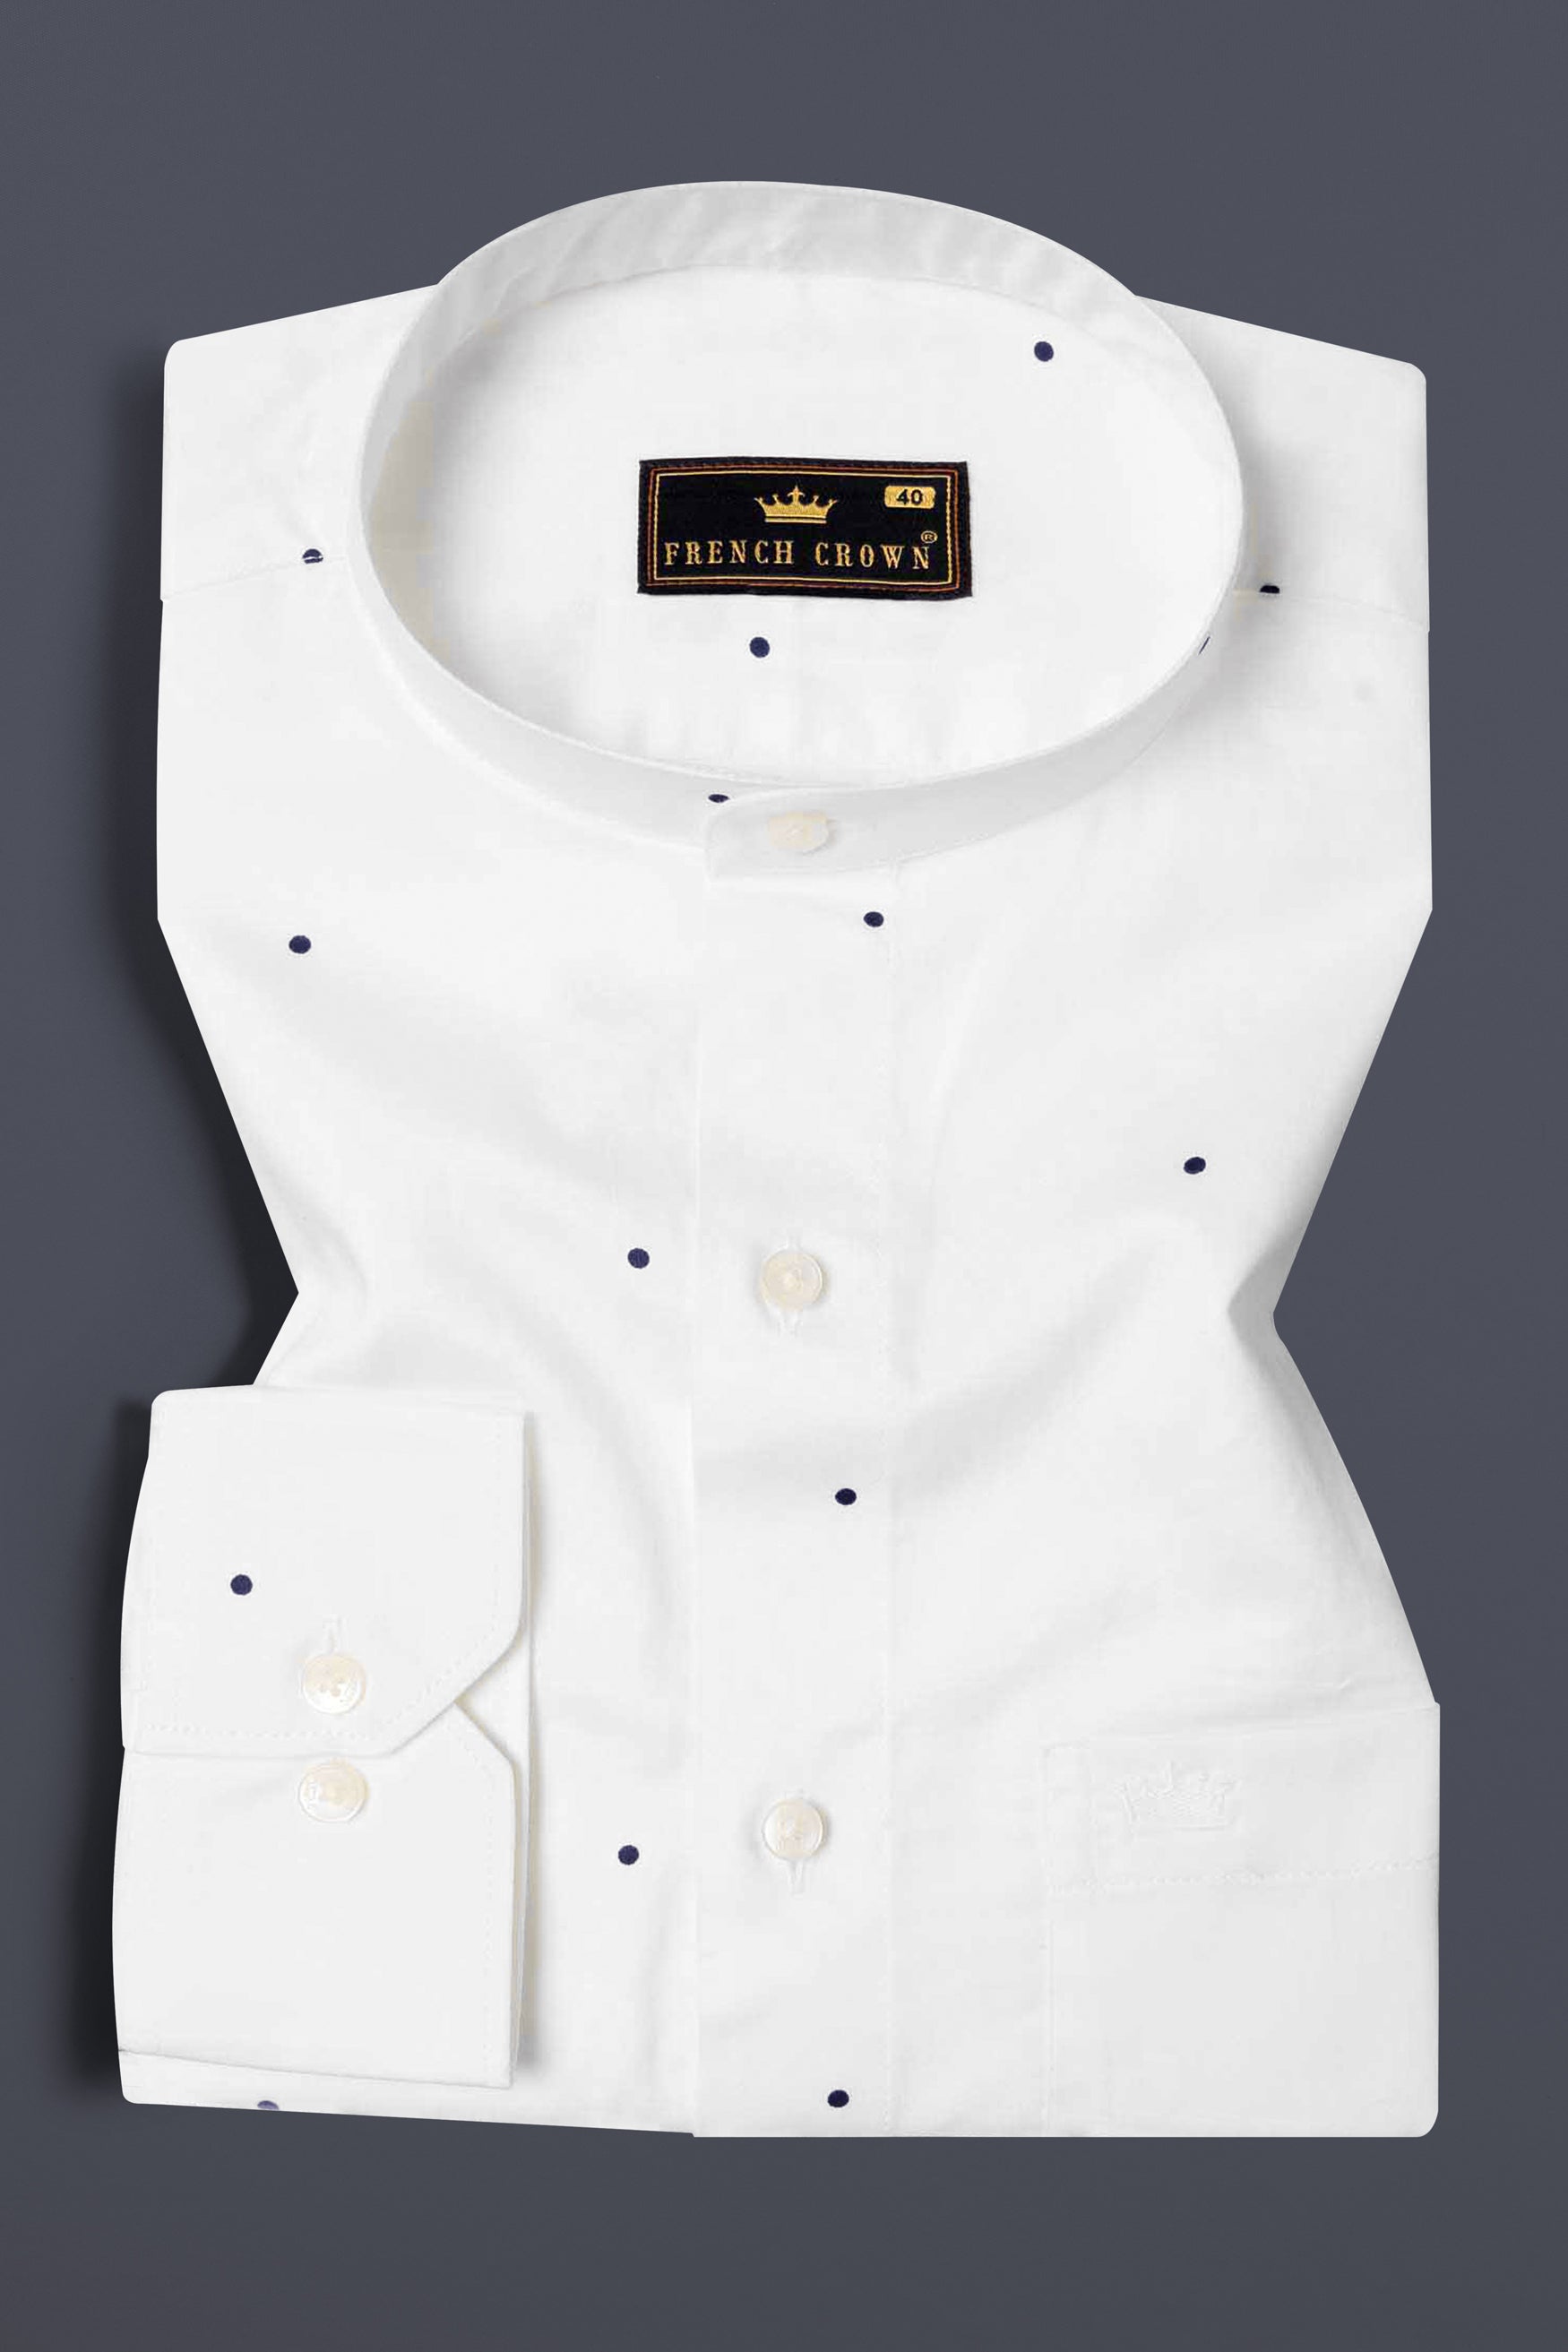 Bright White Dots Printed Super Soft Premium Cotton Shirt